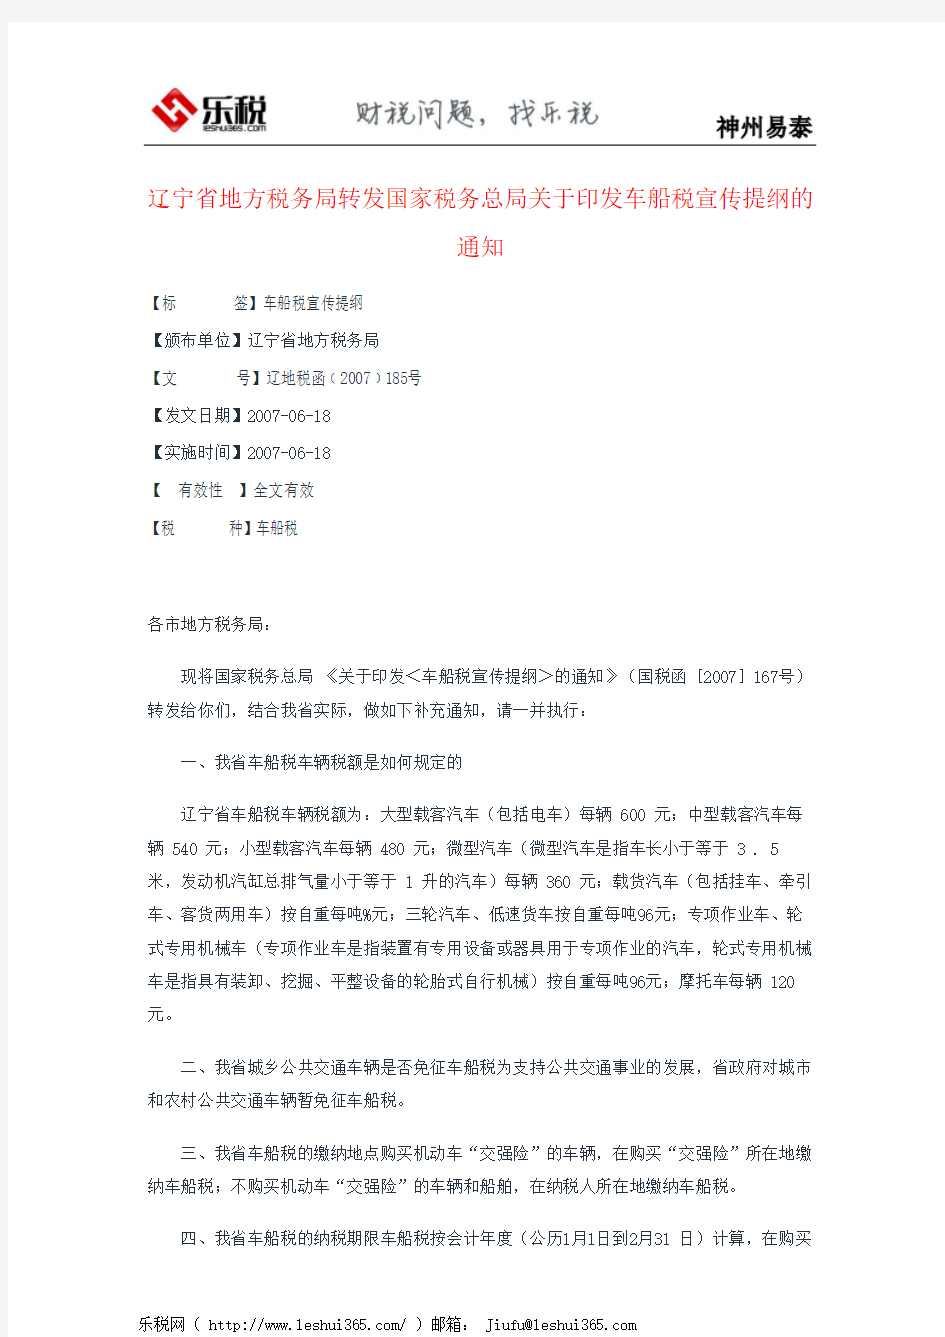 辽宁省地方税务局转发国家税务总局关于印发车船税宣传提纲的通知